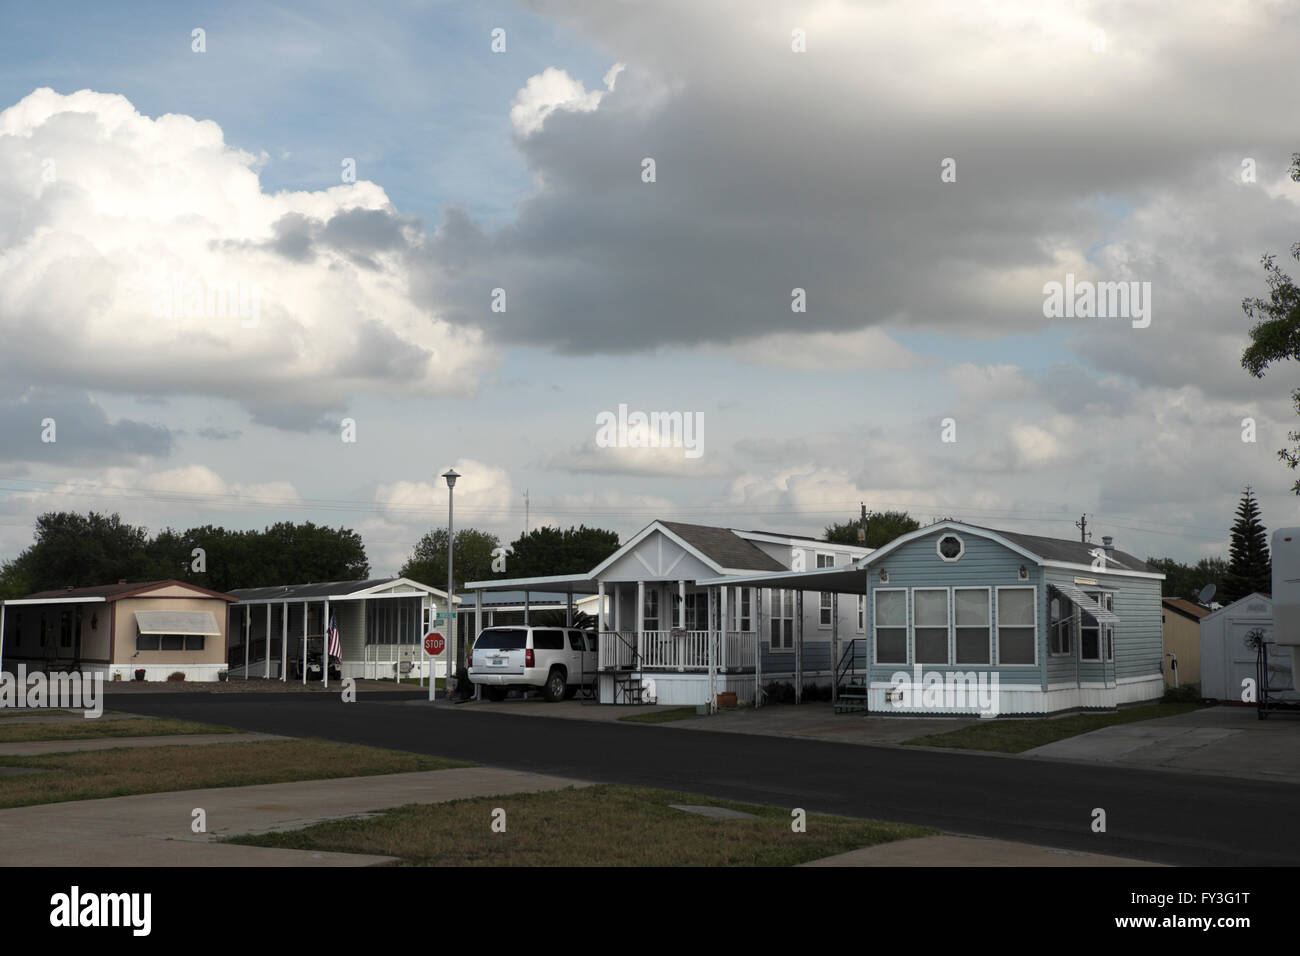 Sattelkupplungen, Mobilheime, Wohnwagen und Park Modelle sitzen gelassen in einem Trailer-Park (RV Resort, Mobilheim Gemeinschaft). Stockfoto